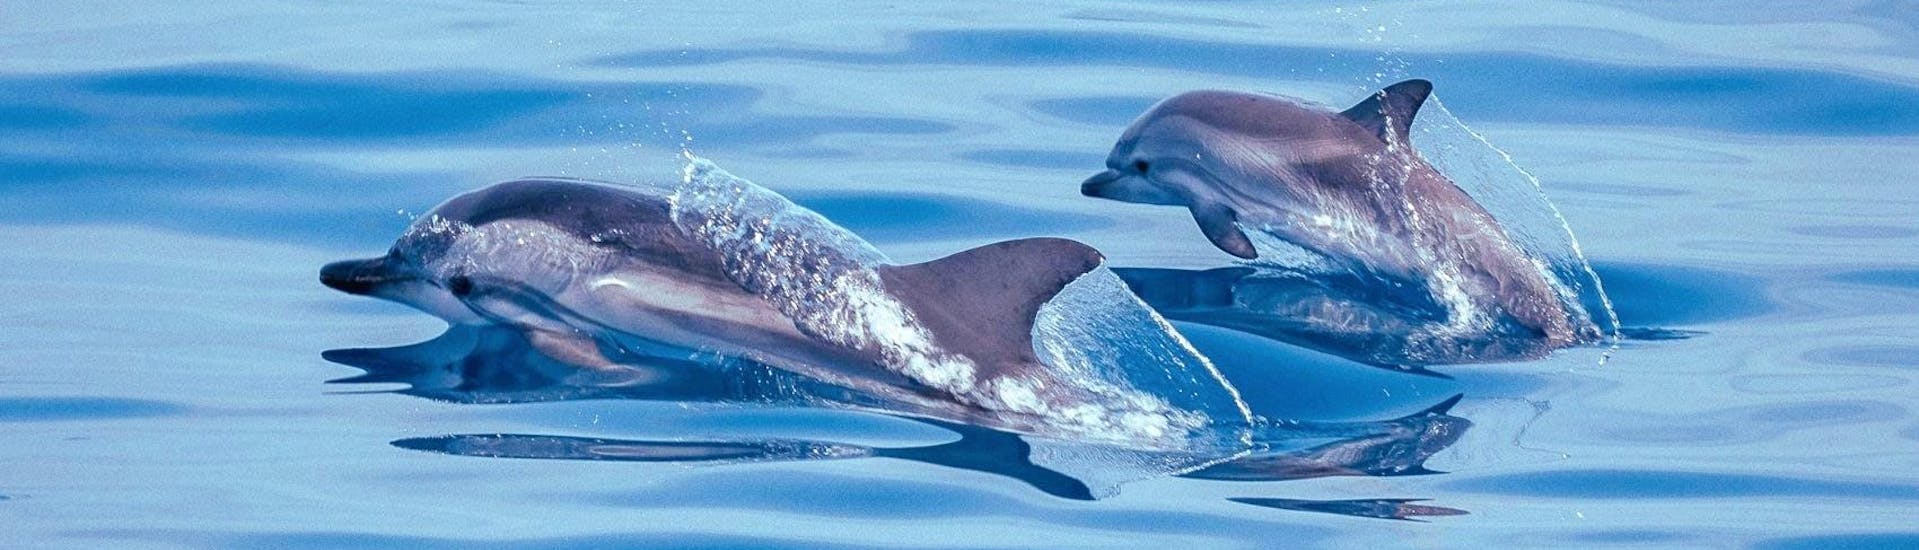 Les dauphins que l'on peut voir pendant la Balade en bateau au cap d'Antibes avec Snorkeling avec BeFree2Dive.